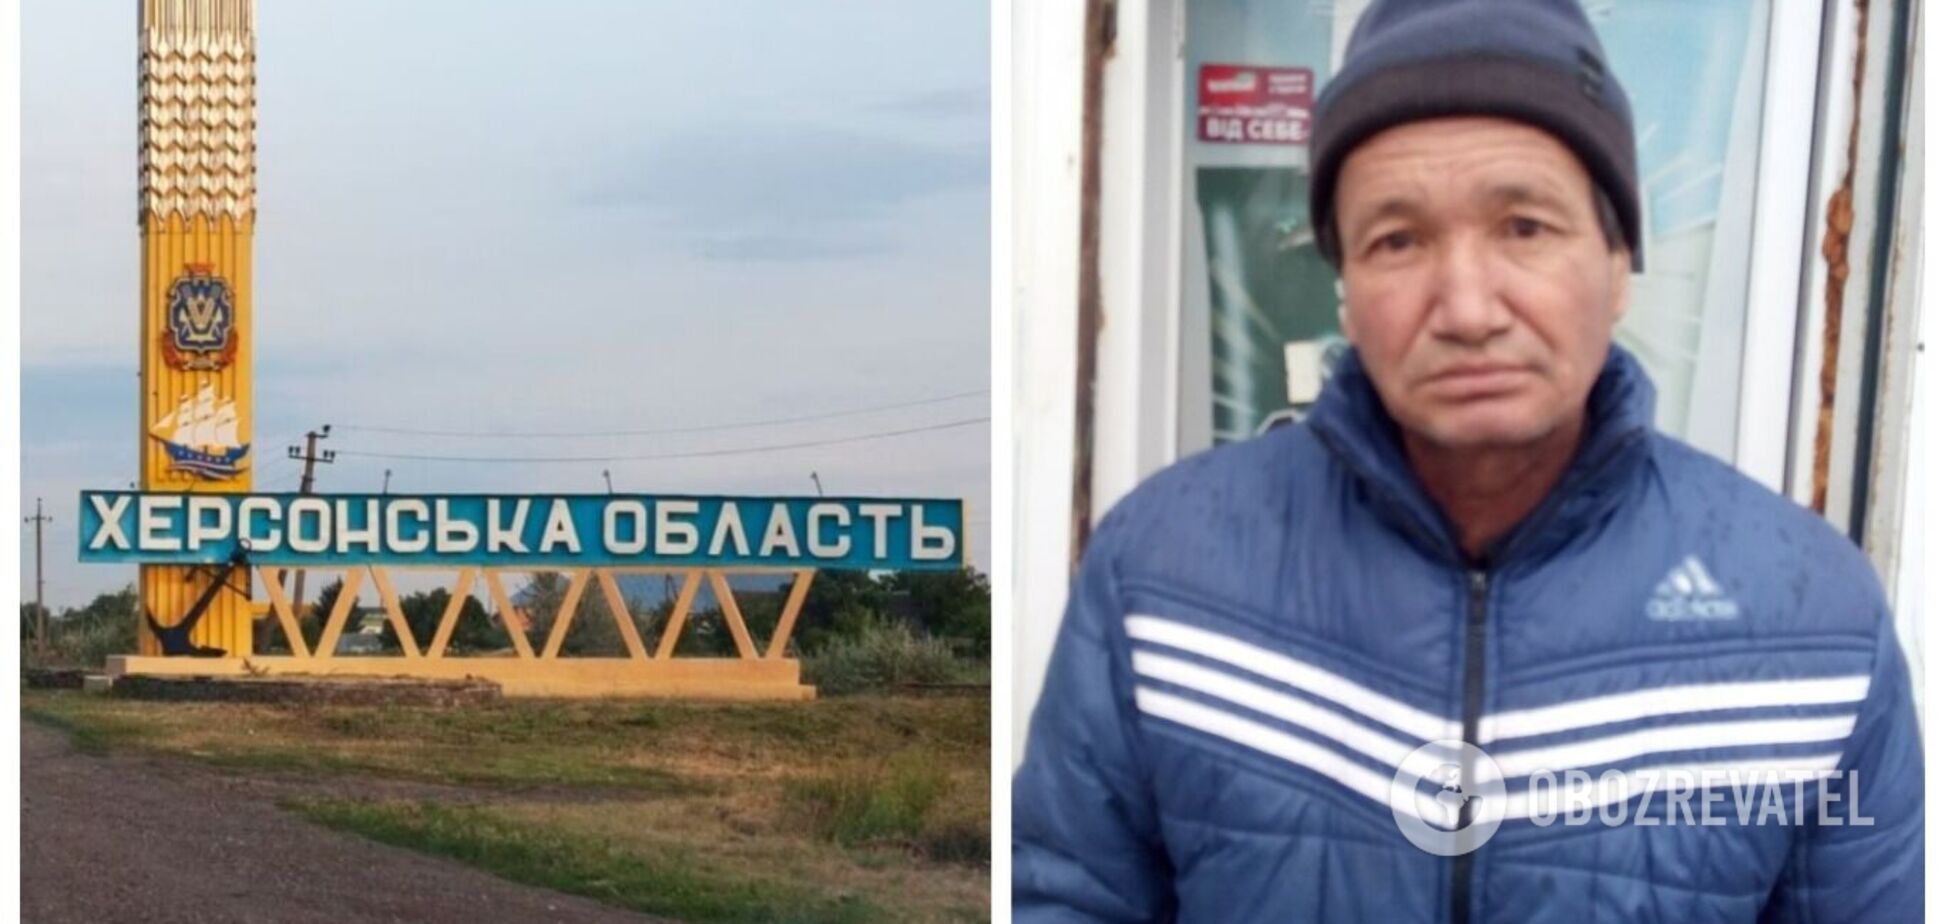 Тело было завернуто в полиэтилен: на оккупированной части Херсонщины нашли мертвым крымского татарина